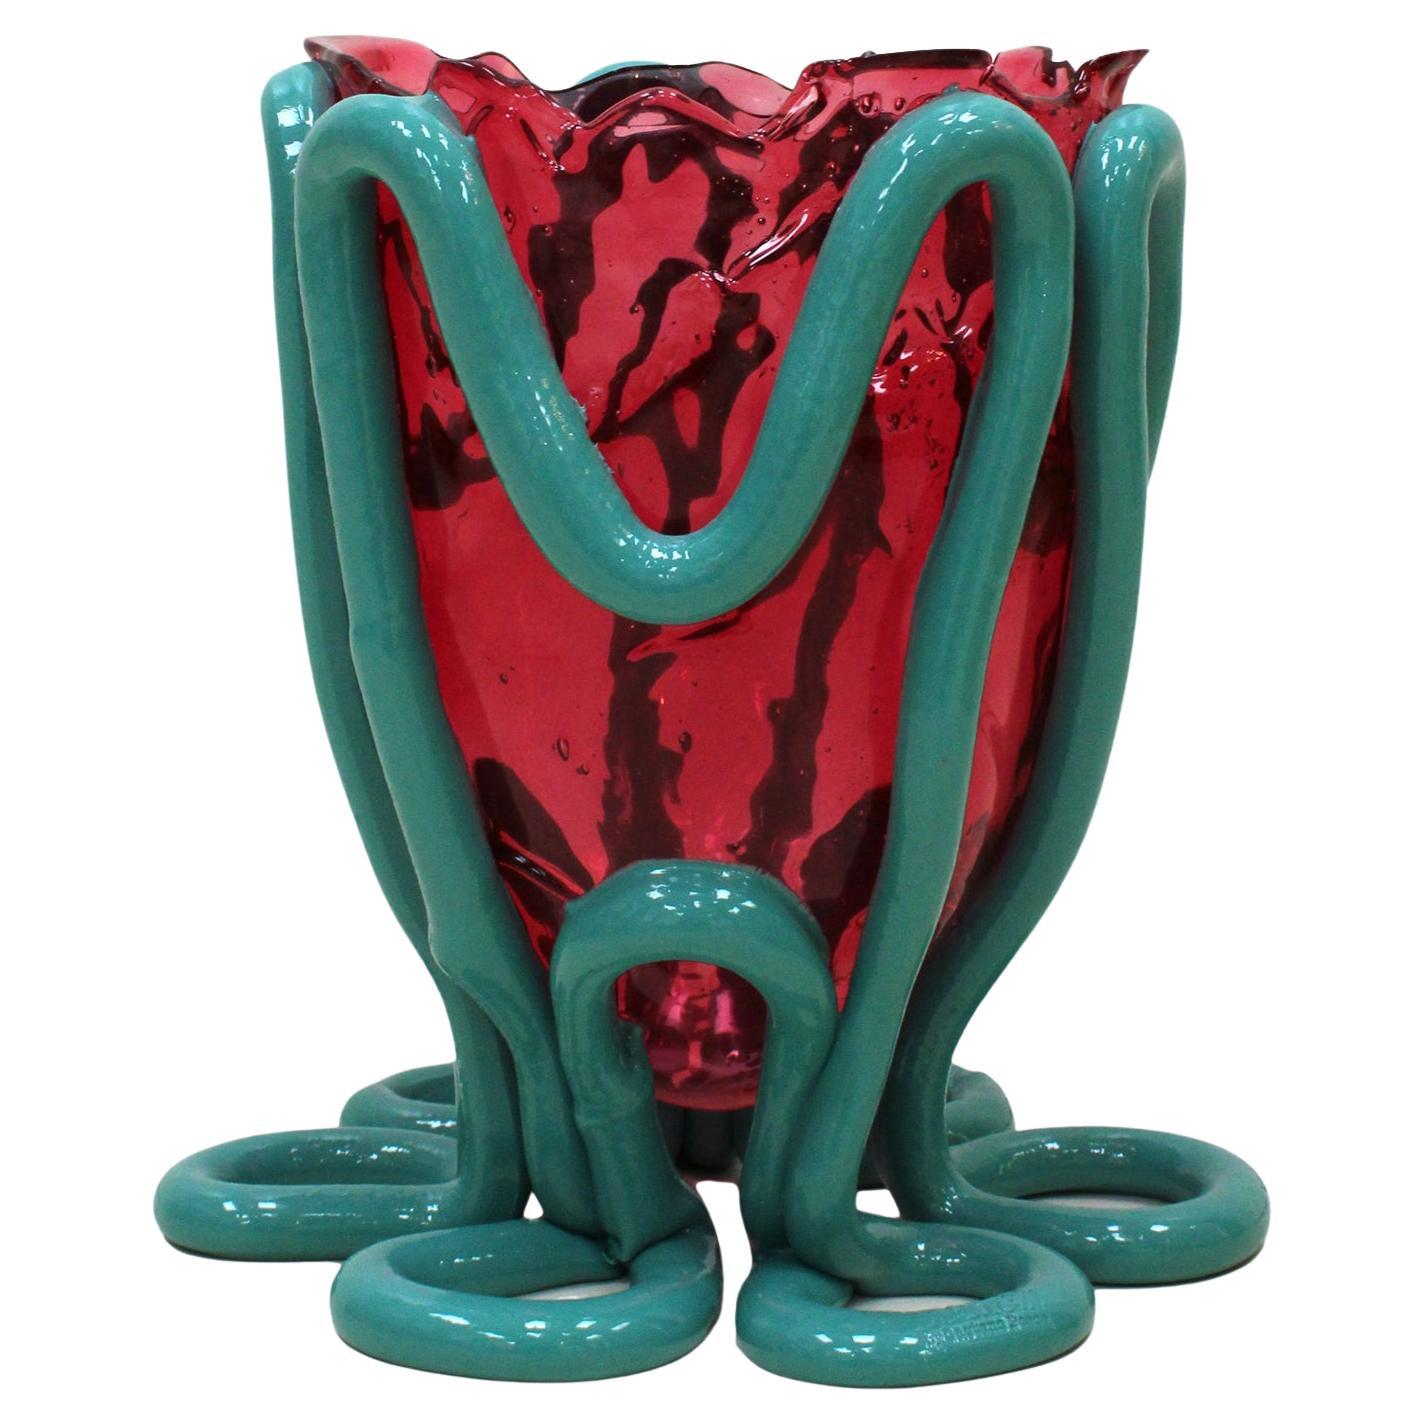 Vase Mod. Indian Summer Designed By Gaetano Pesce, Italy